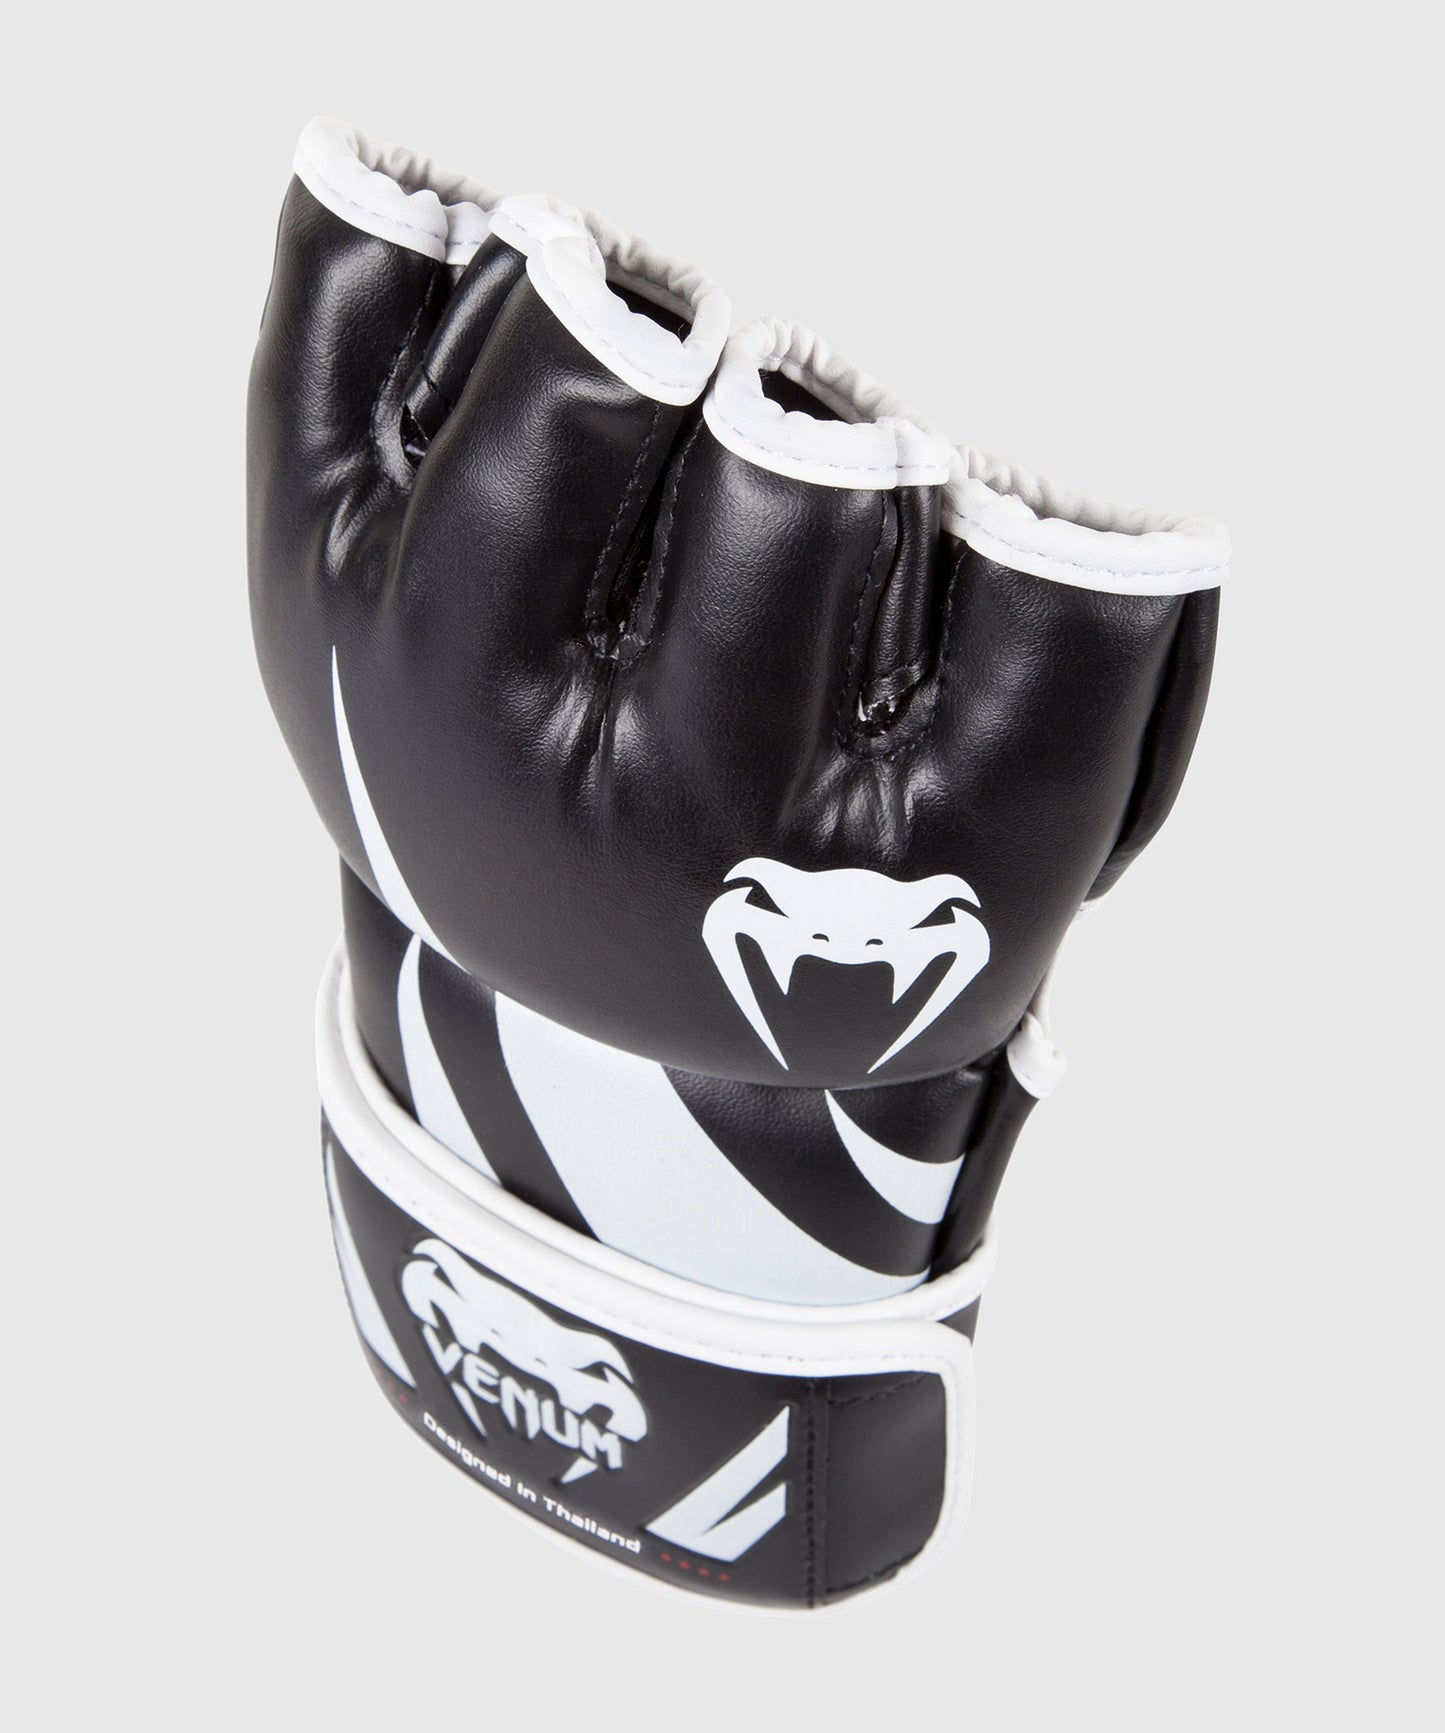 Venum "Challenger" MMA-Handschuhe - Schwarz